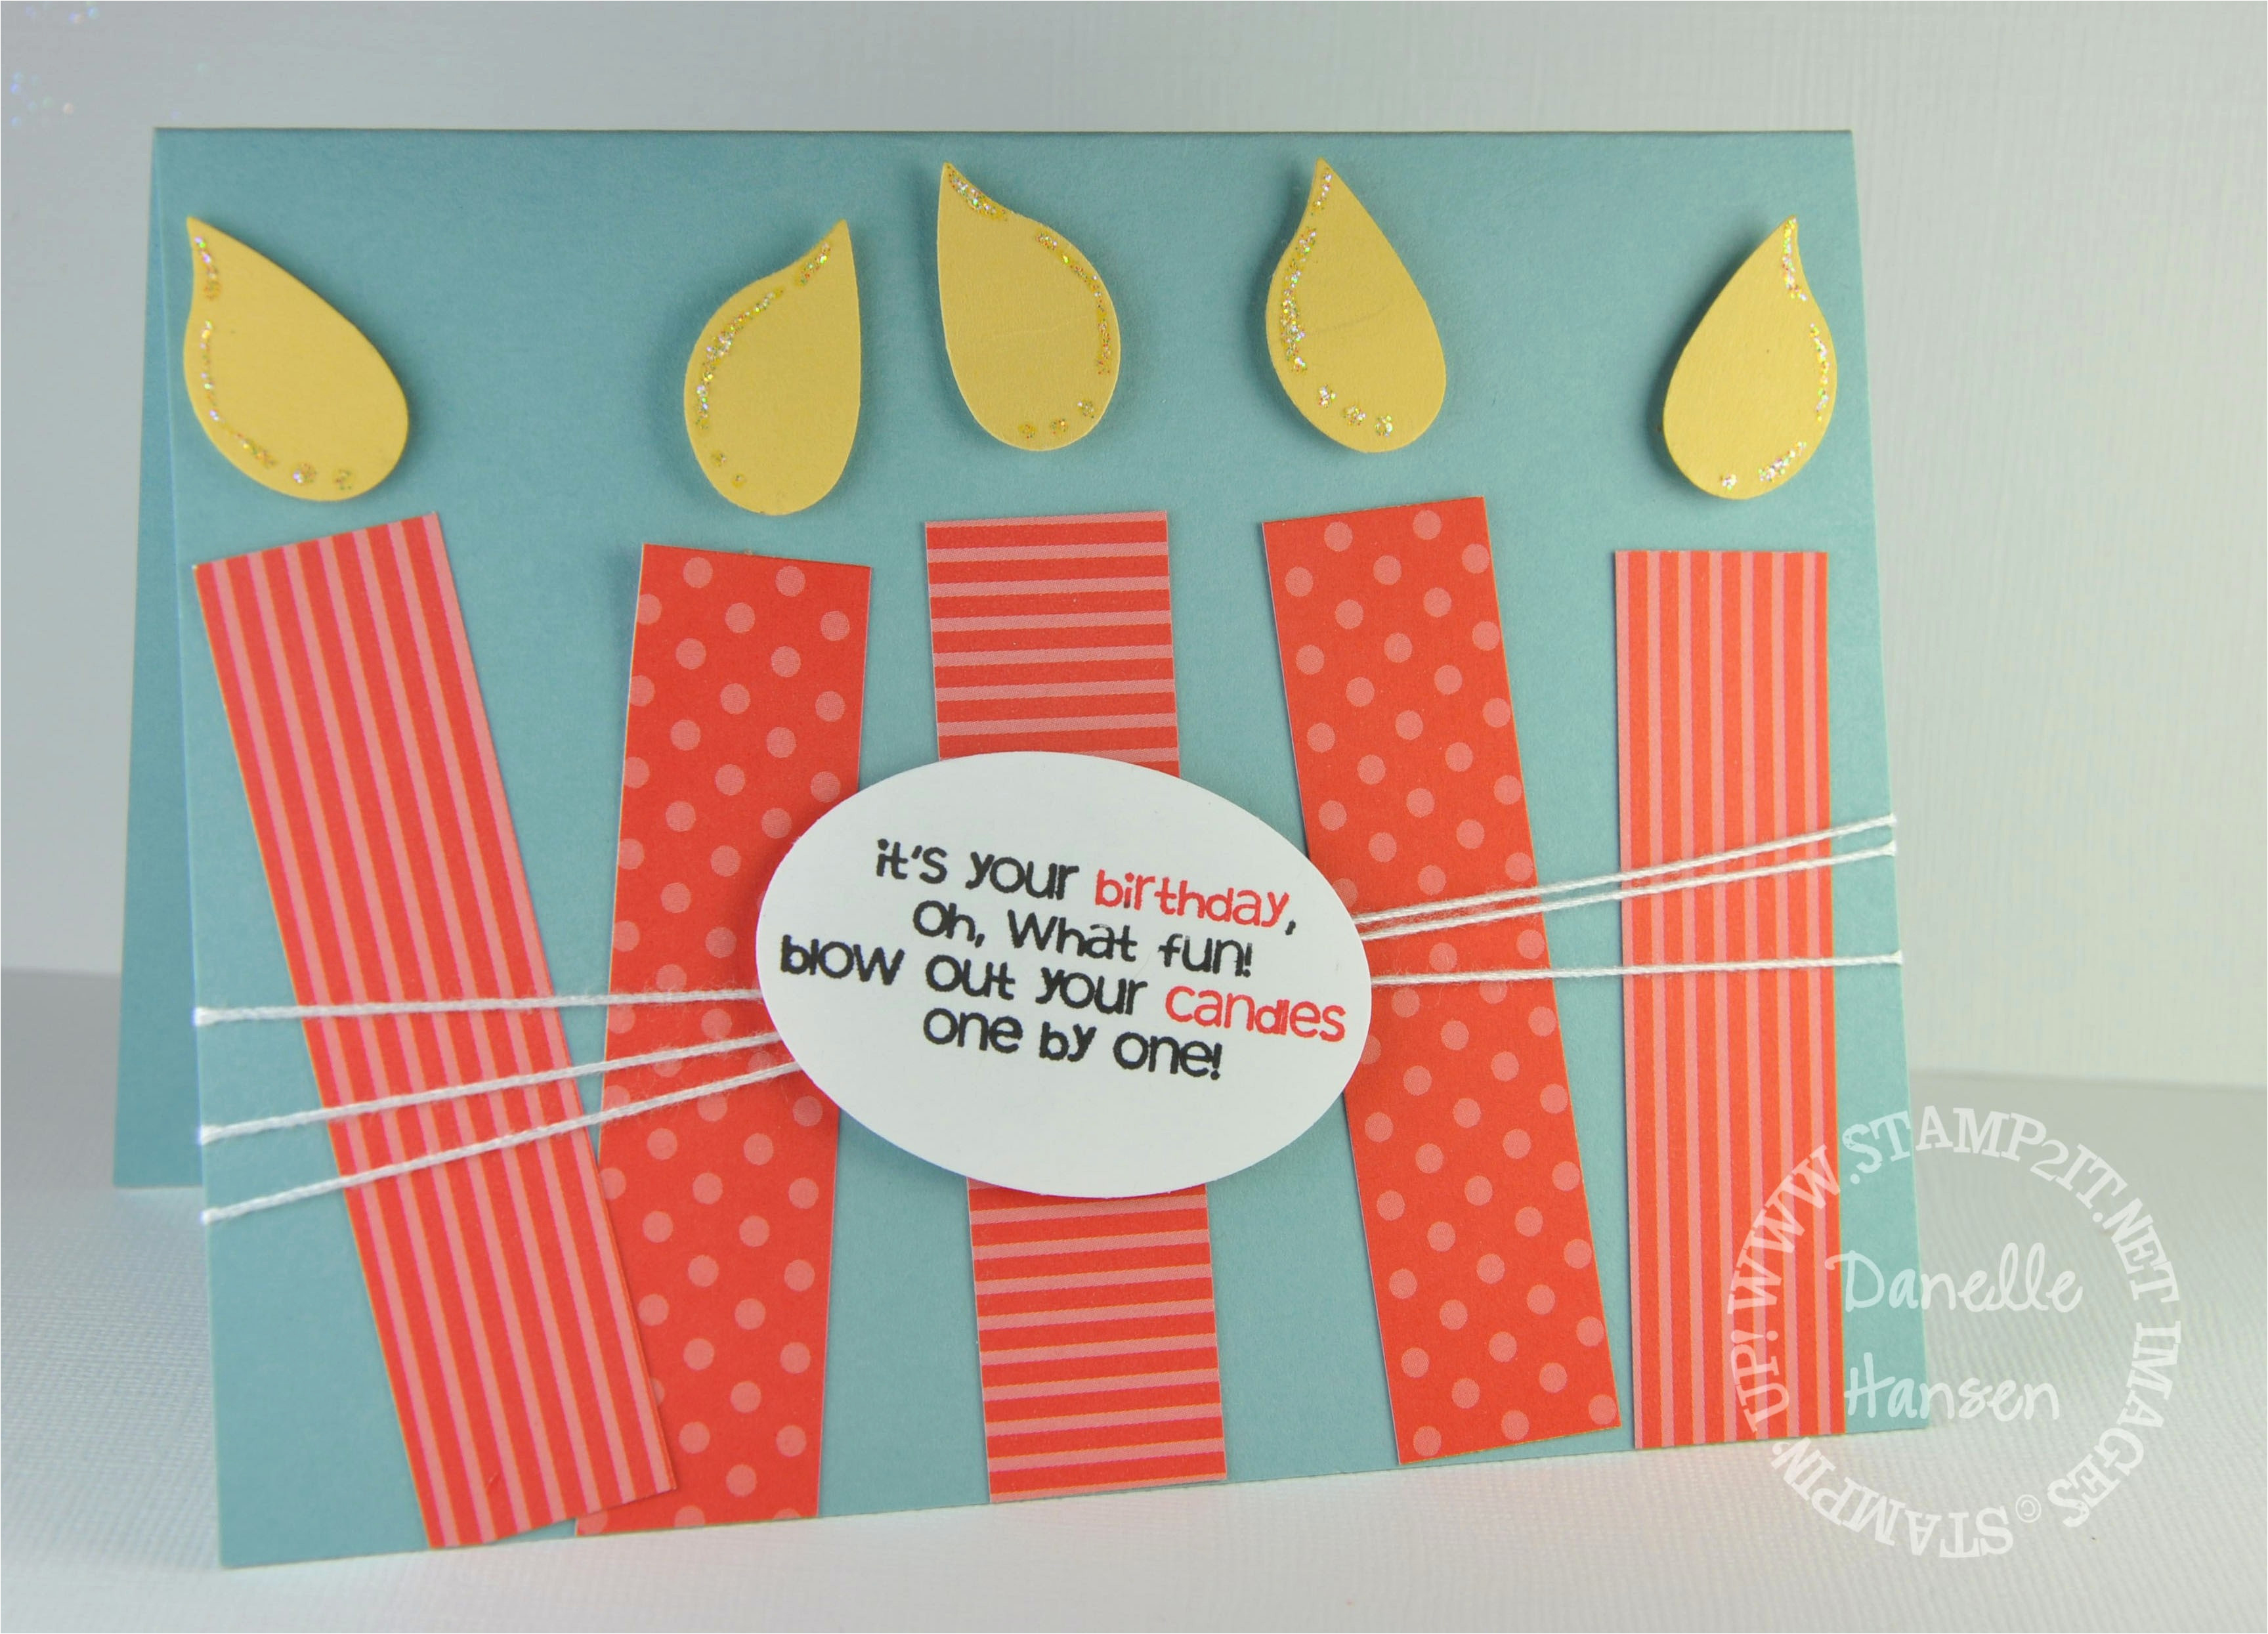 Birthday Card Making Ideas For Husband Diy Birthday Cards For Husband Creative Handmade Birthday Card Ideas